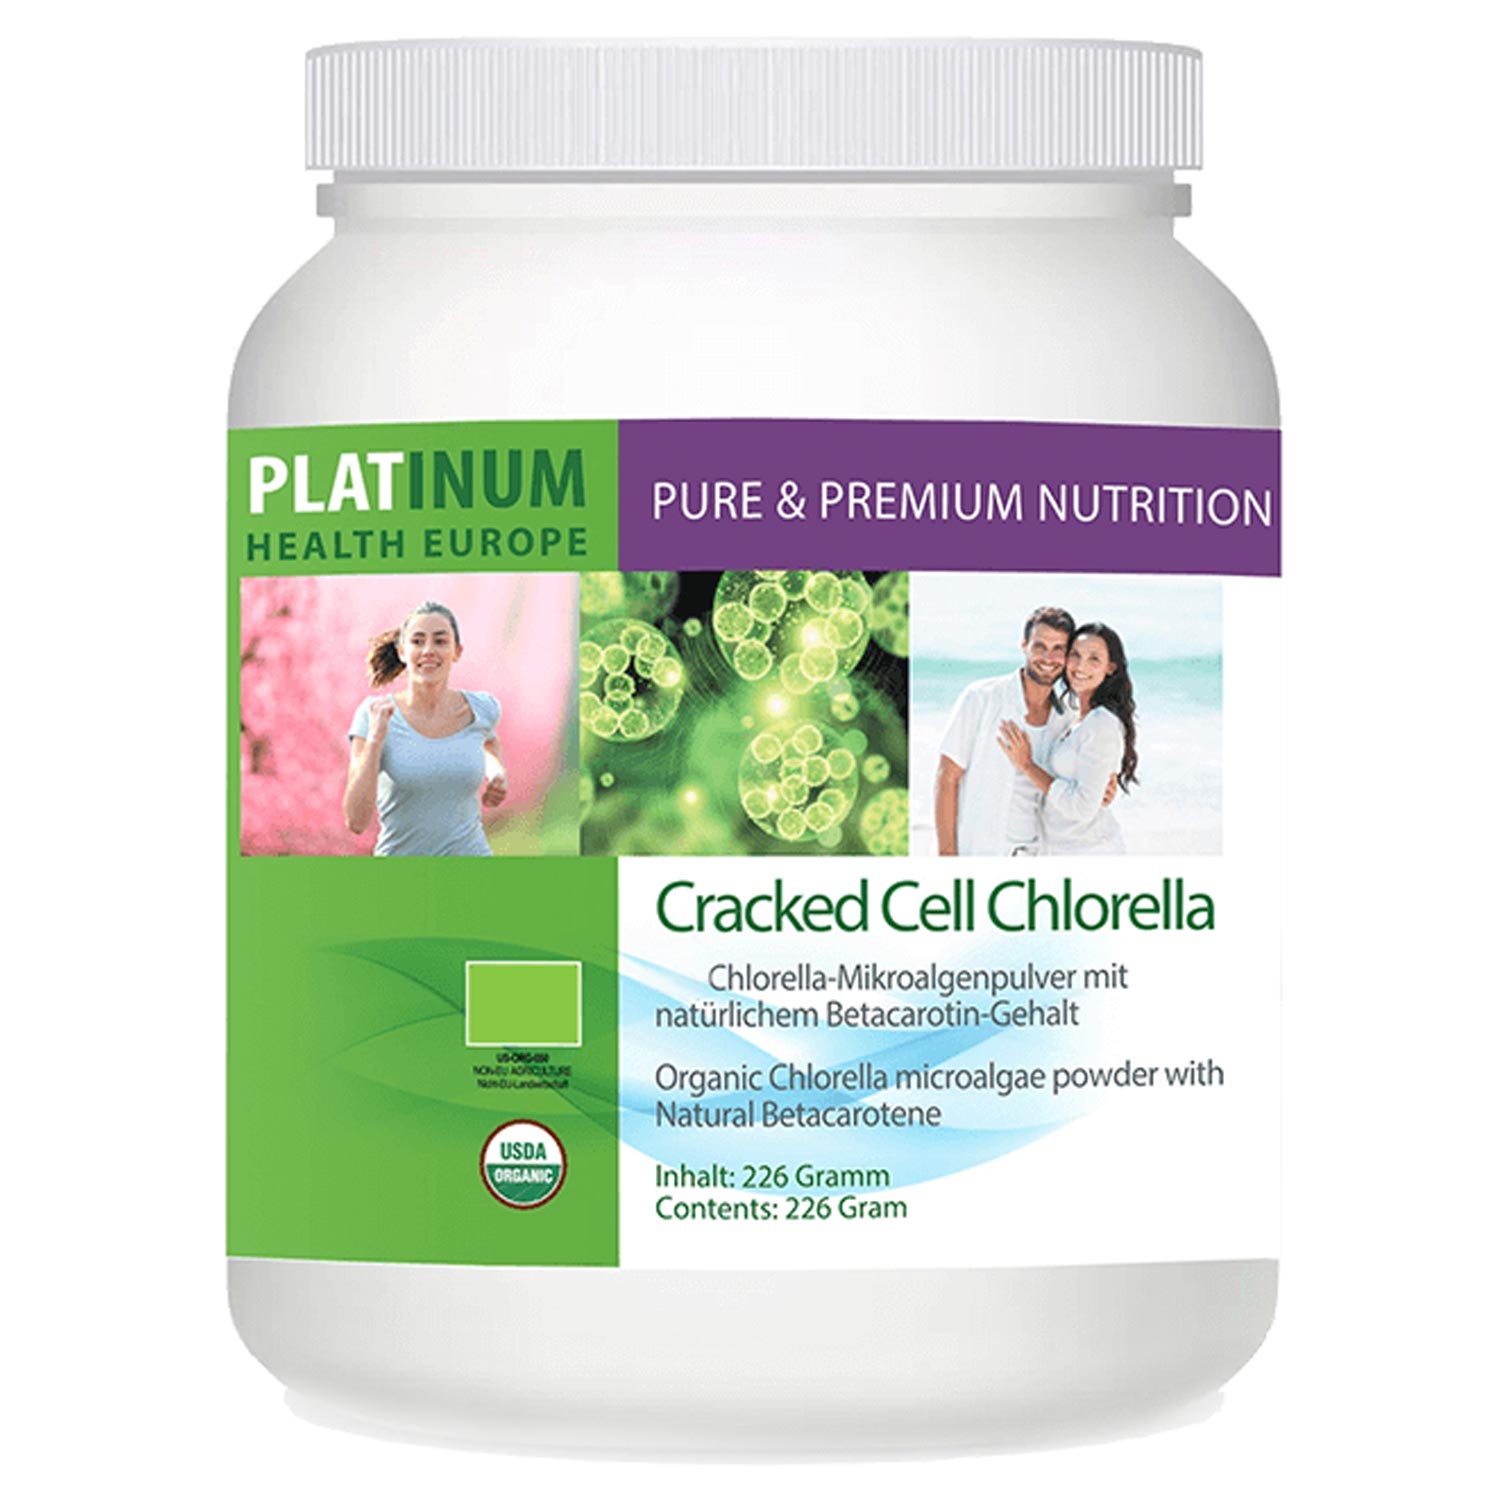 Cracked Cell Chlorella von Platinum Health - 226g